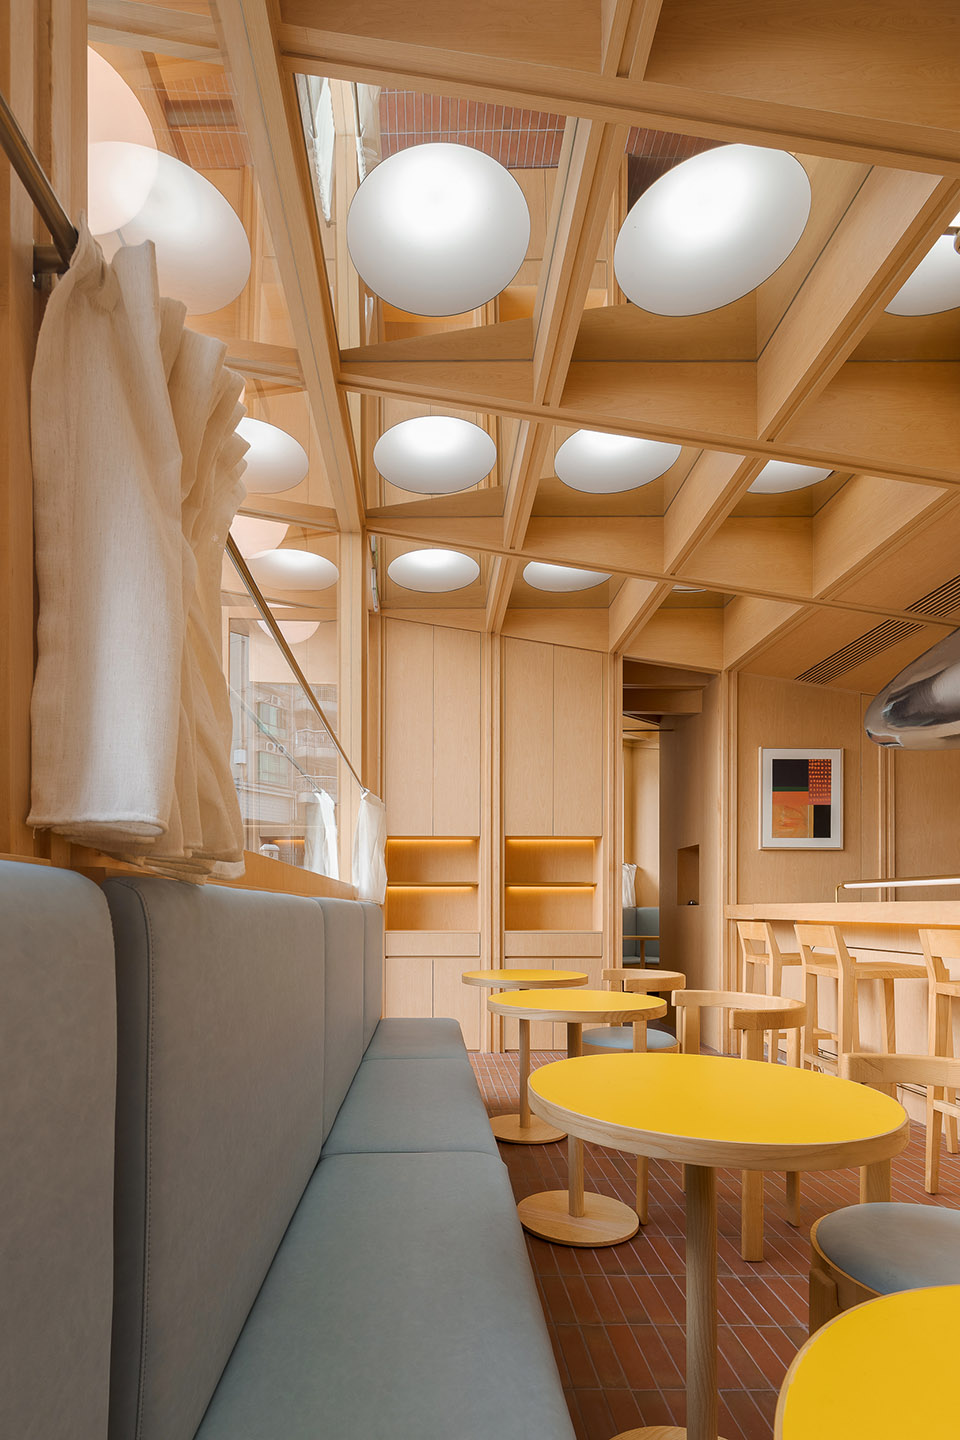 浮廊C2 Cafe &  Bar咖啡厅，深圳/专门为年轻人打造的“空中楼阁”-72